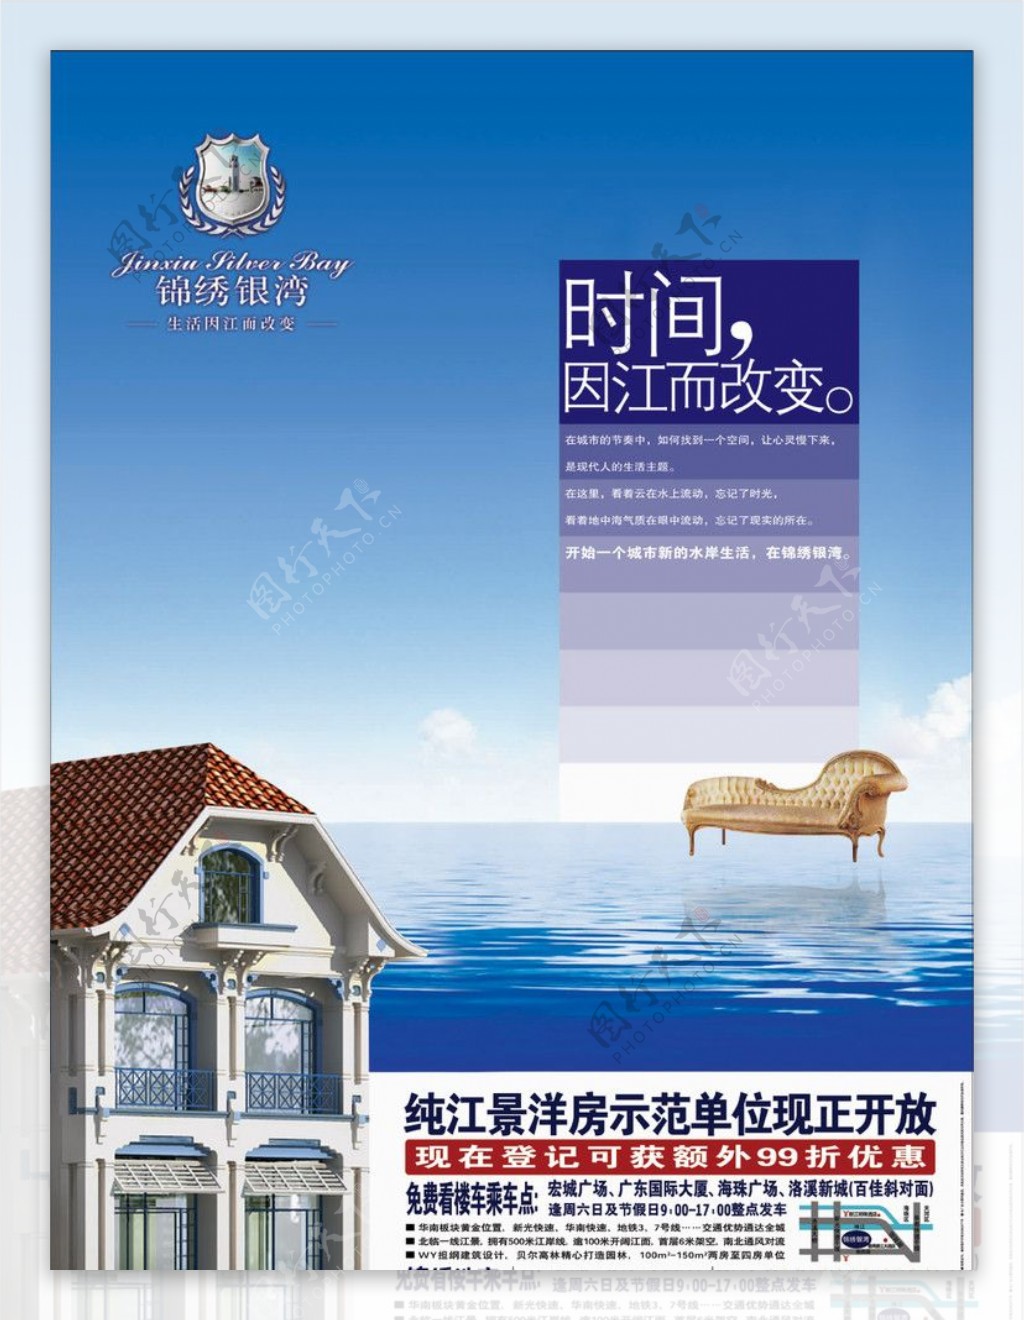 锦绣银湾地产广告图片